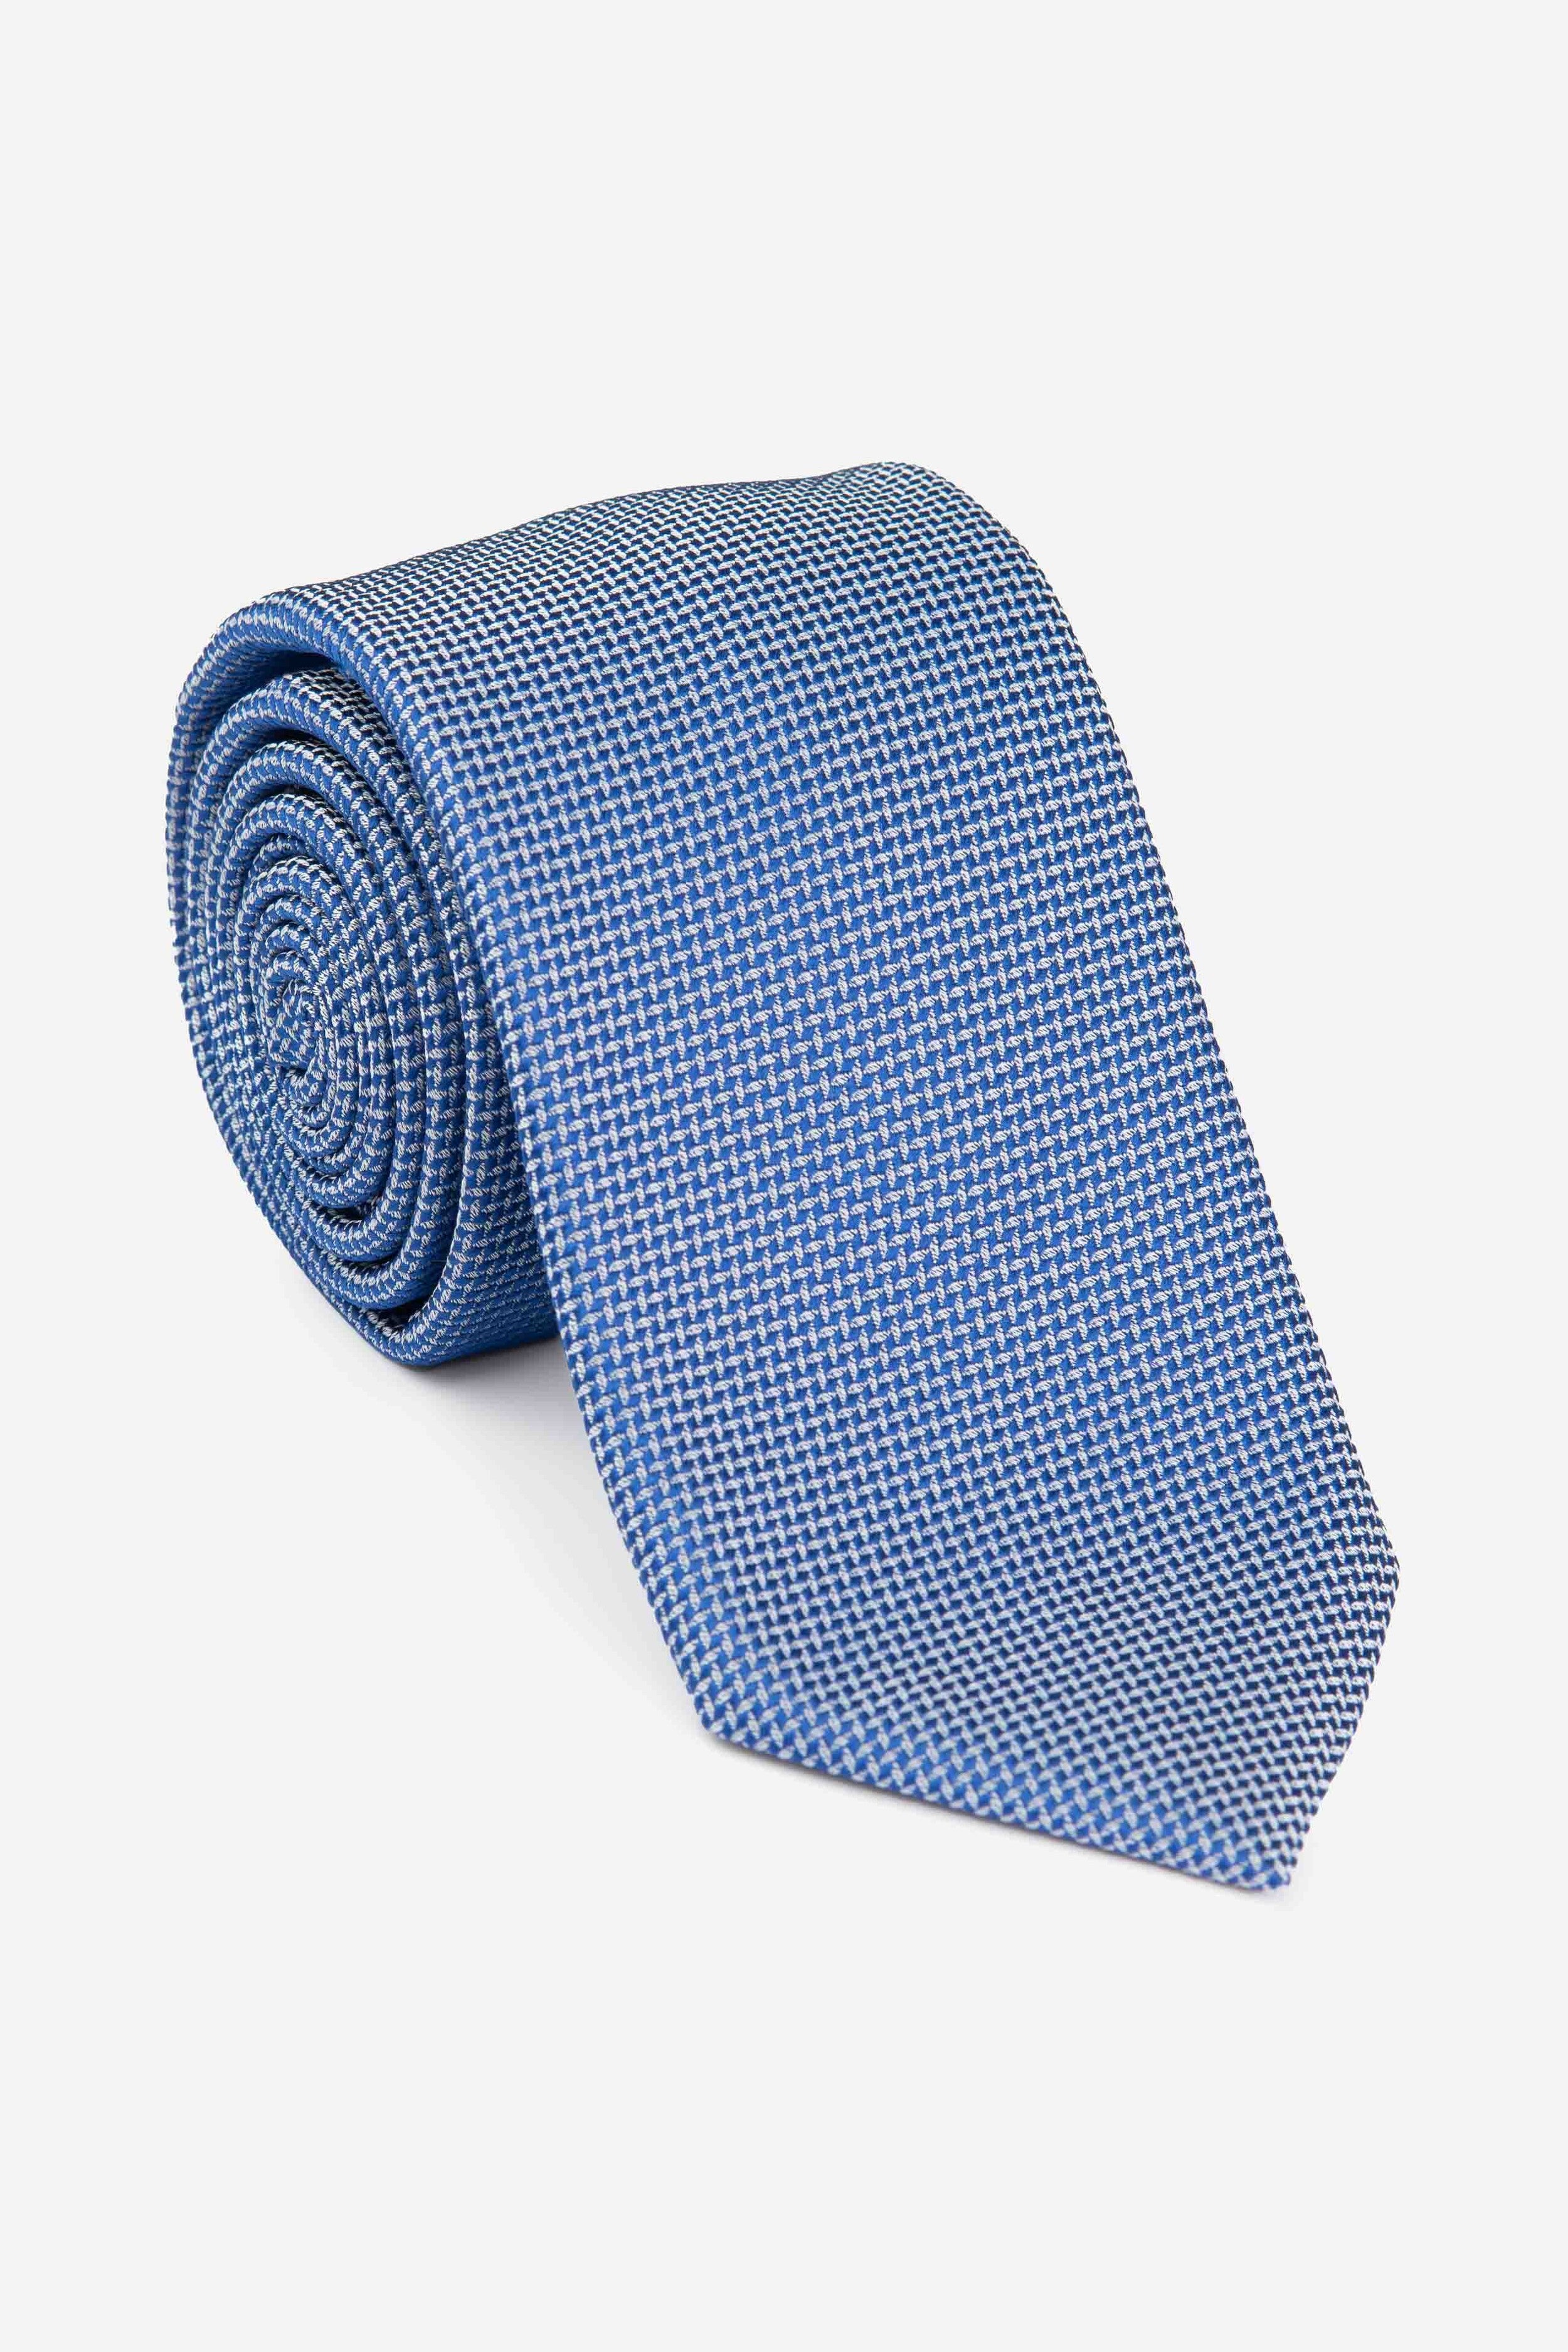 Cravatta cerimonia blu - BLU ELETTRICO